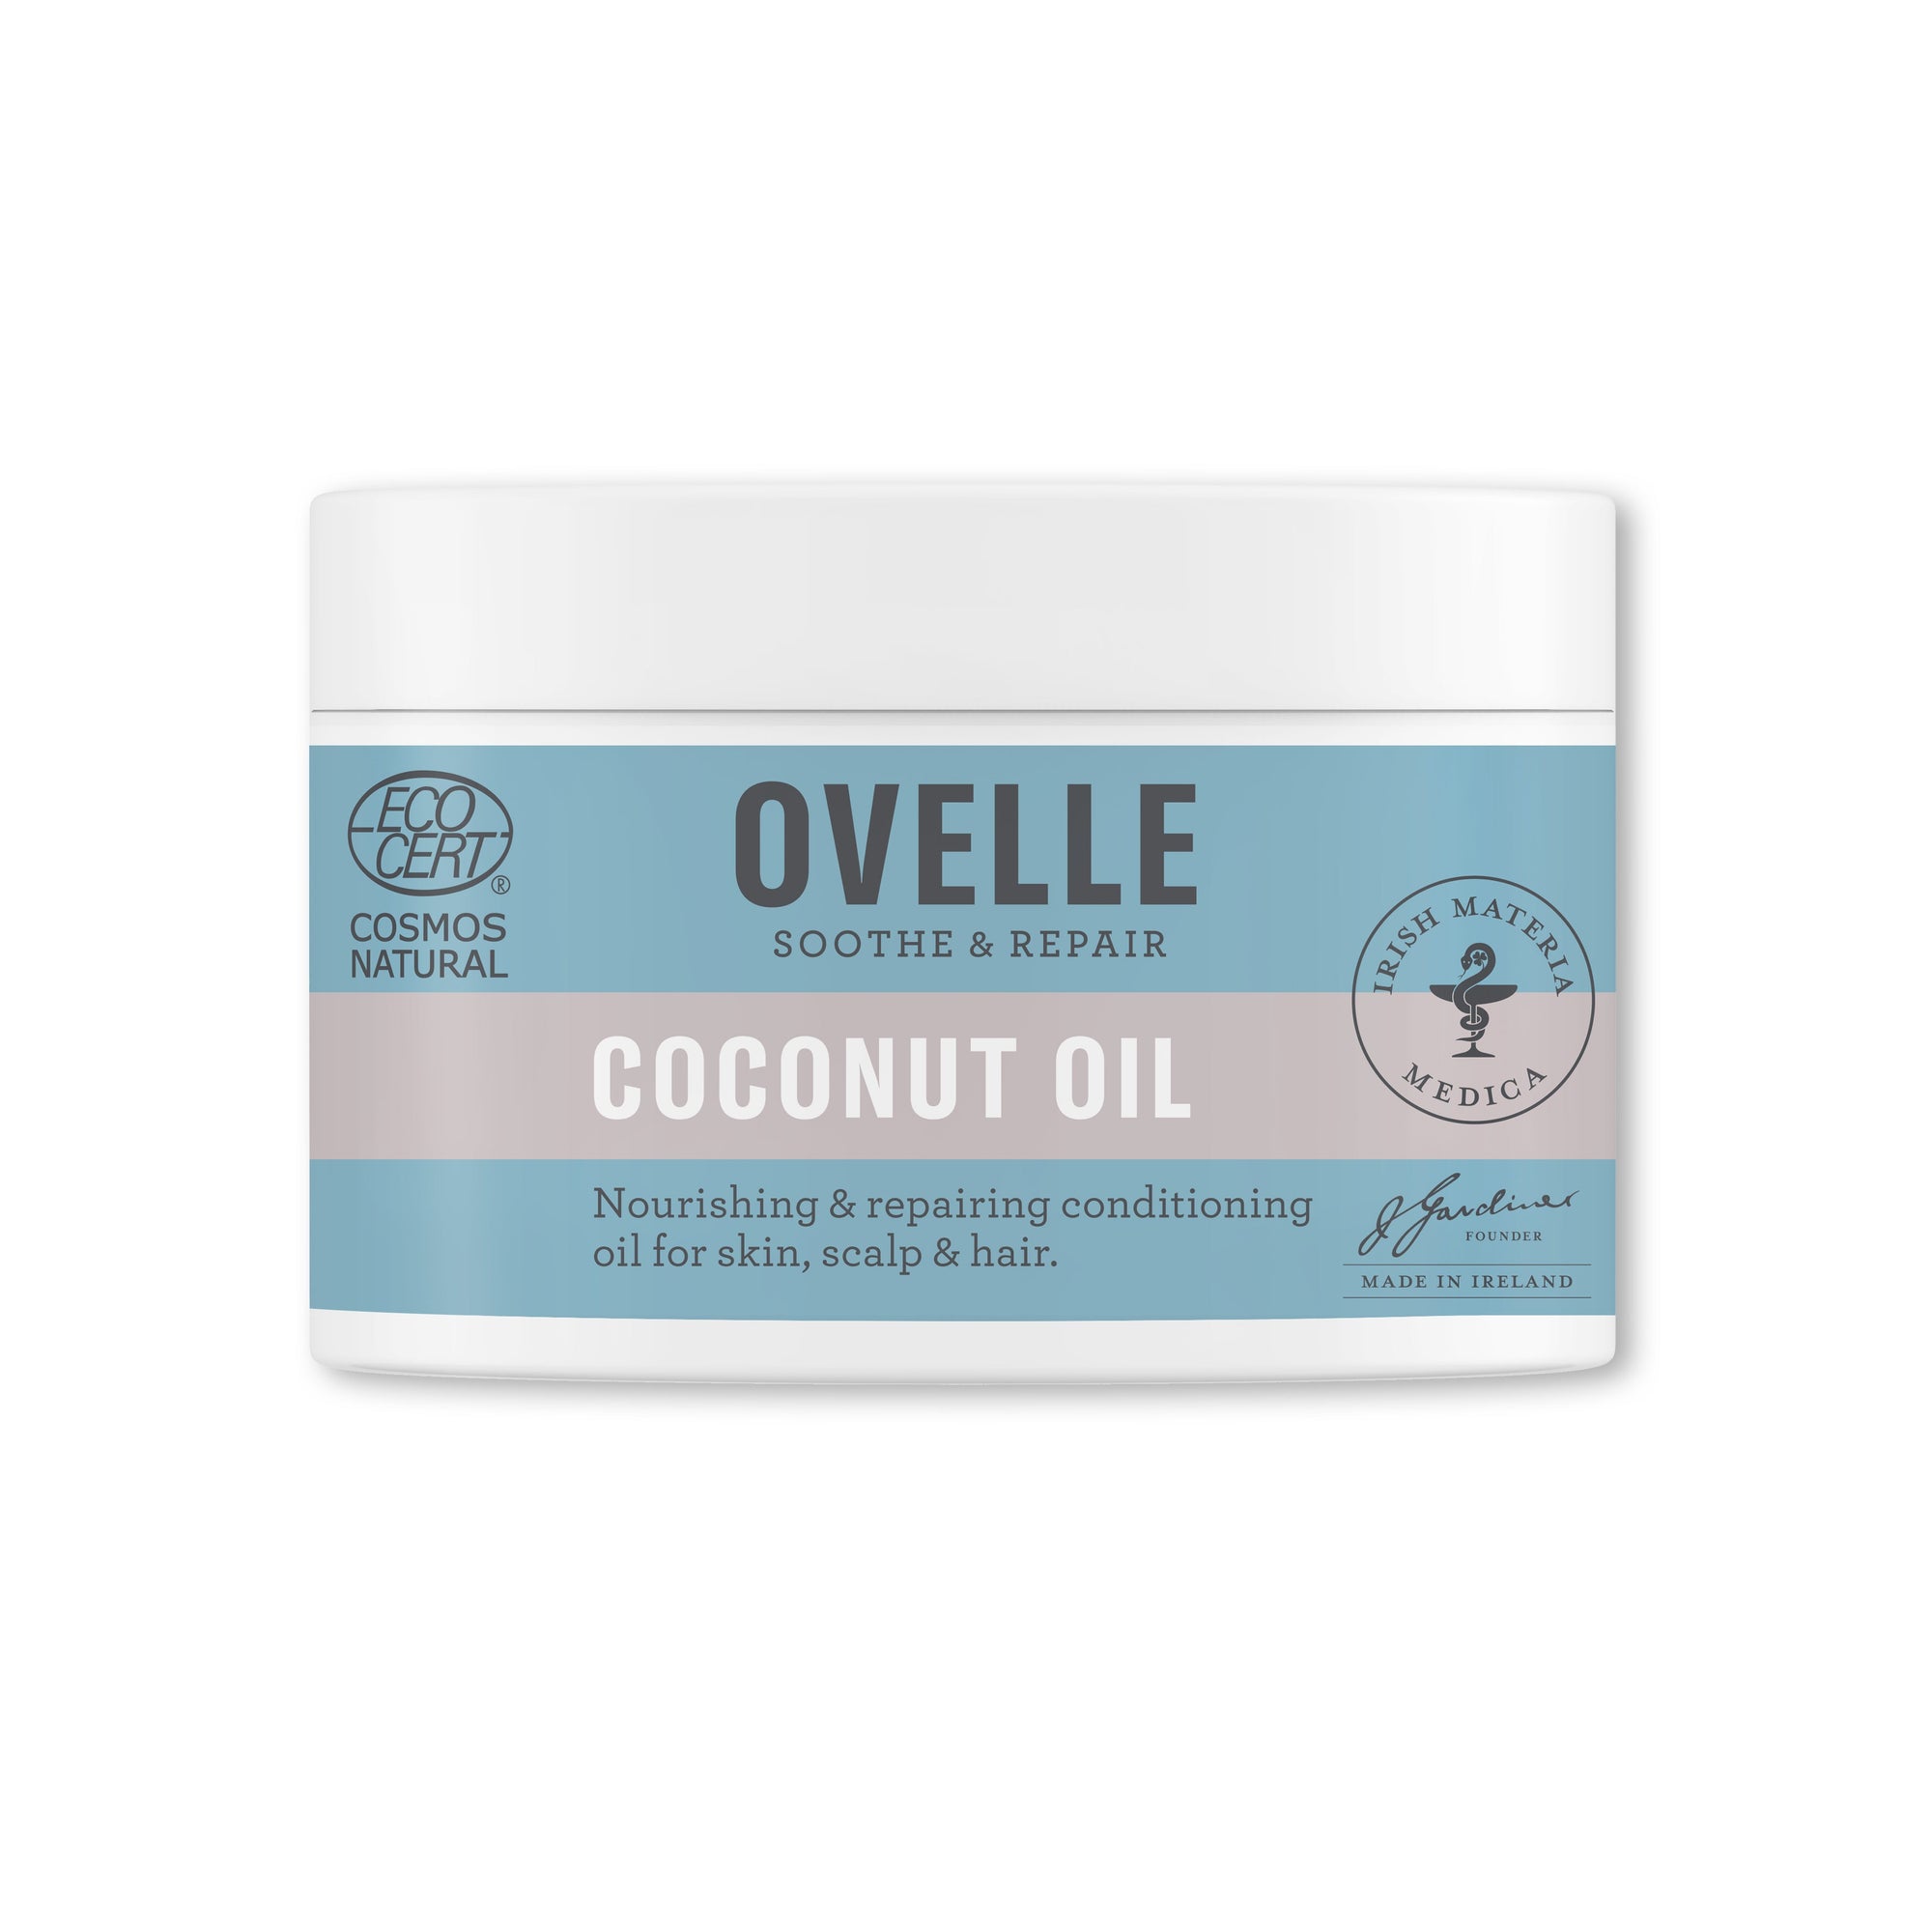 Ovelle 椰子油100克 / Ovelle Coconut Oil 100g